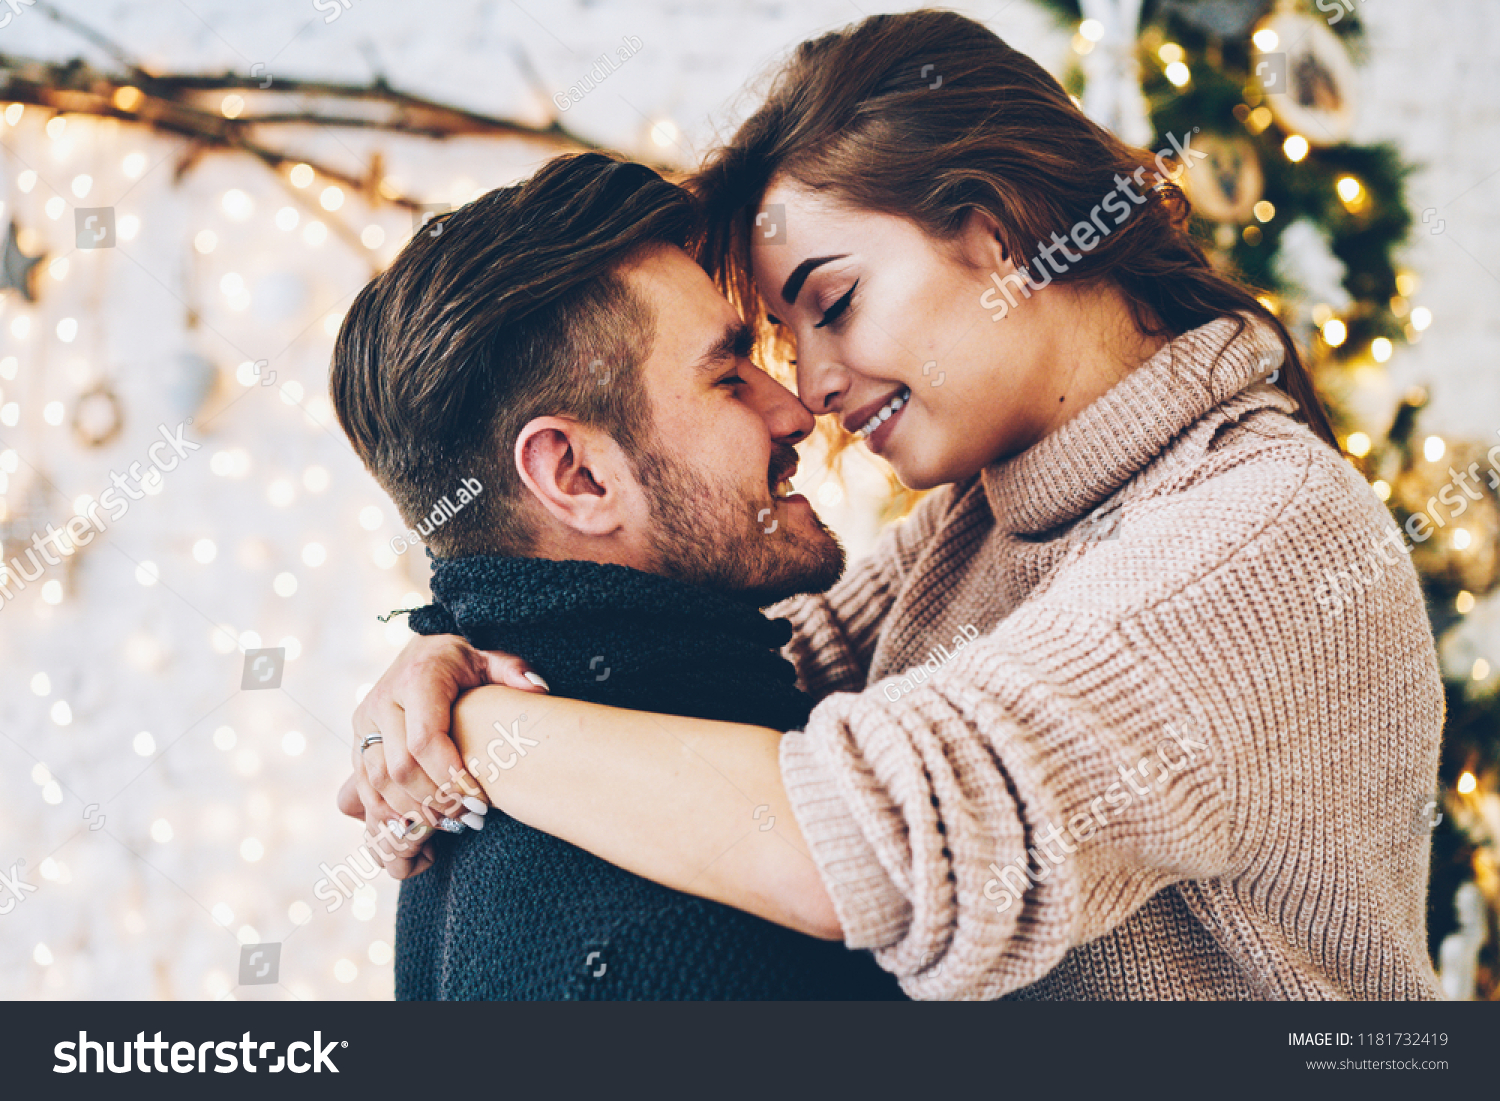 Images romantic romance love Best Sims